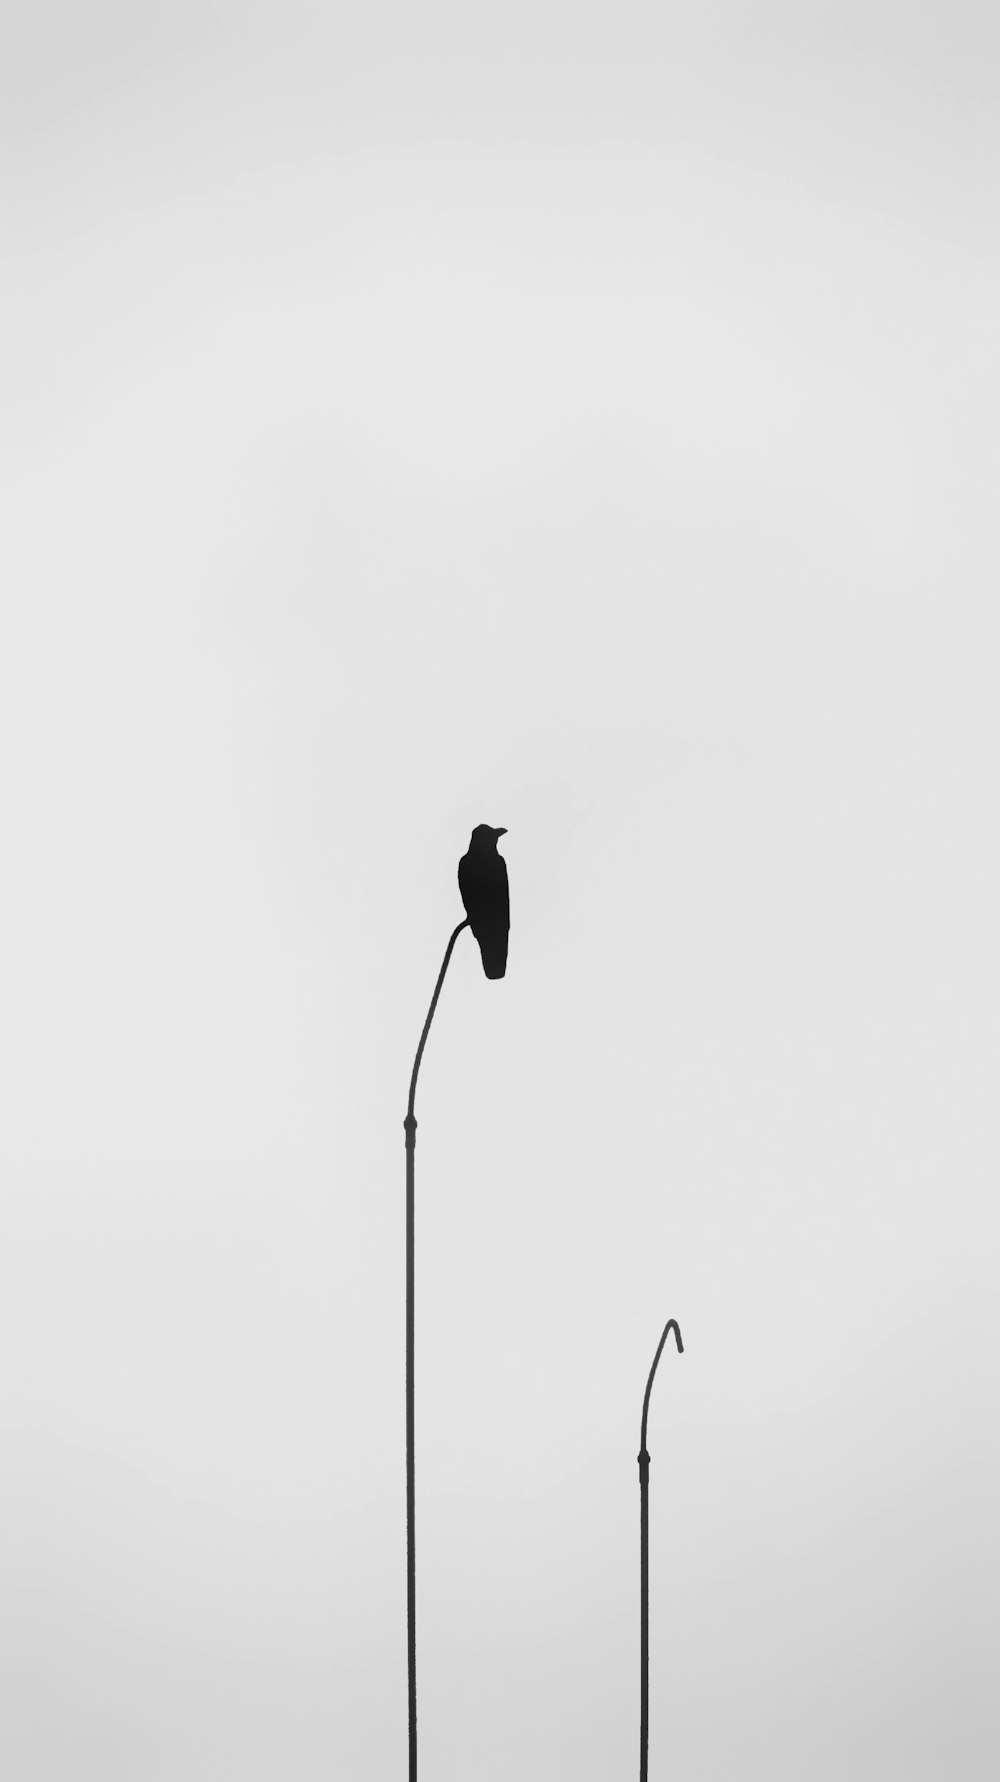 Una foto en blanco y negro de dos farolas